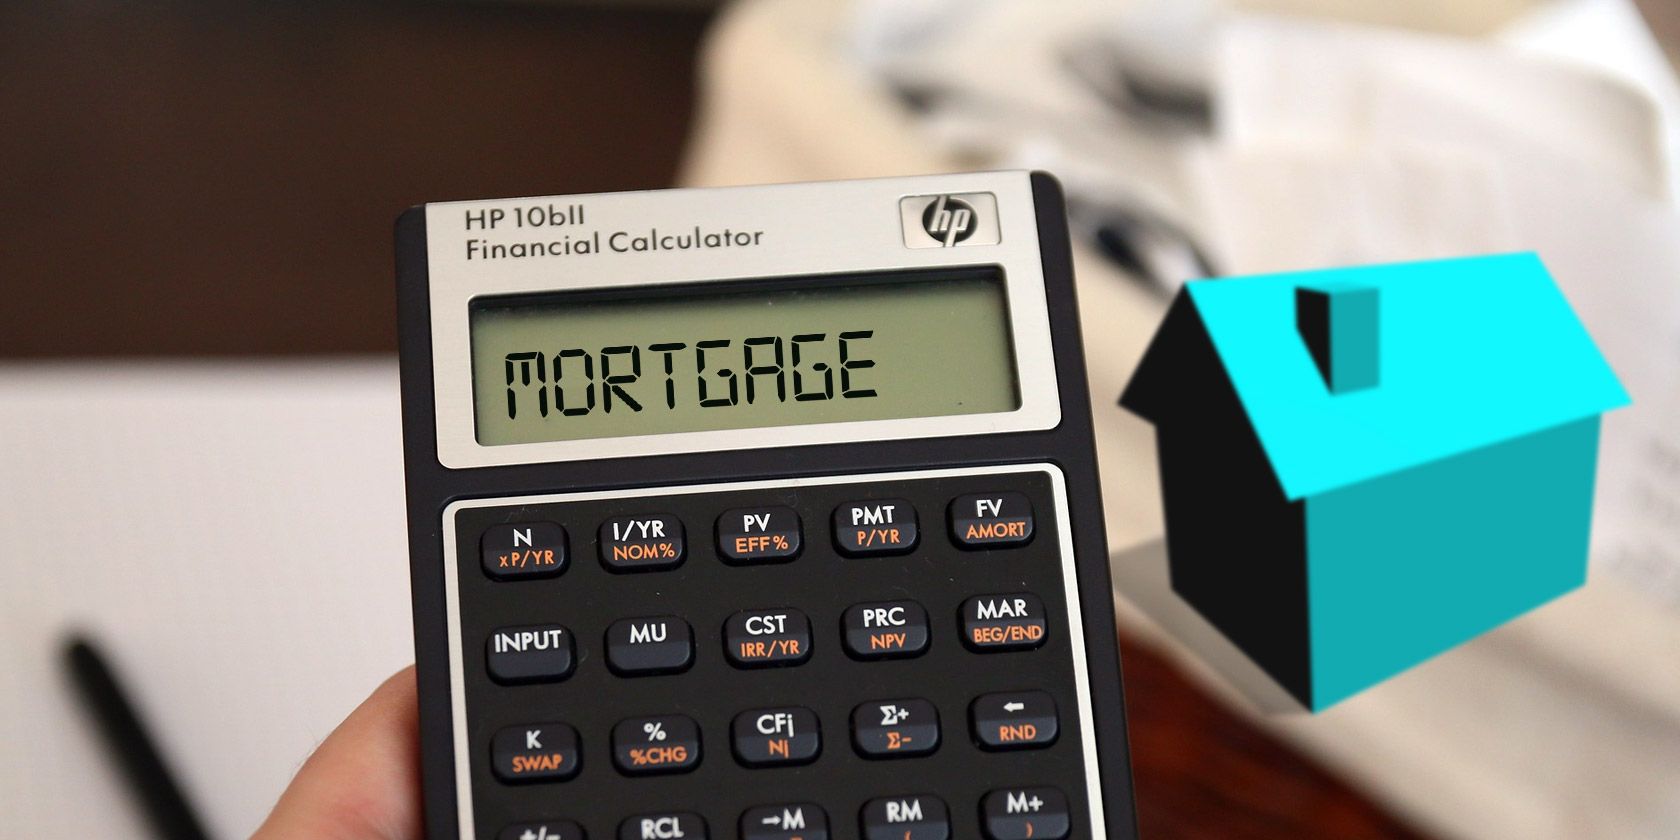 mortgage-calculator